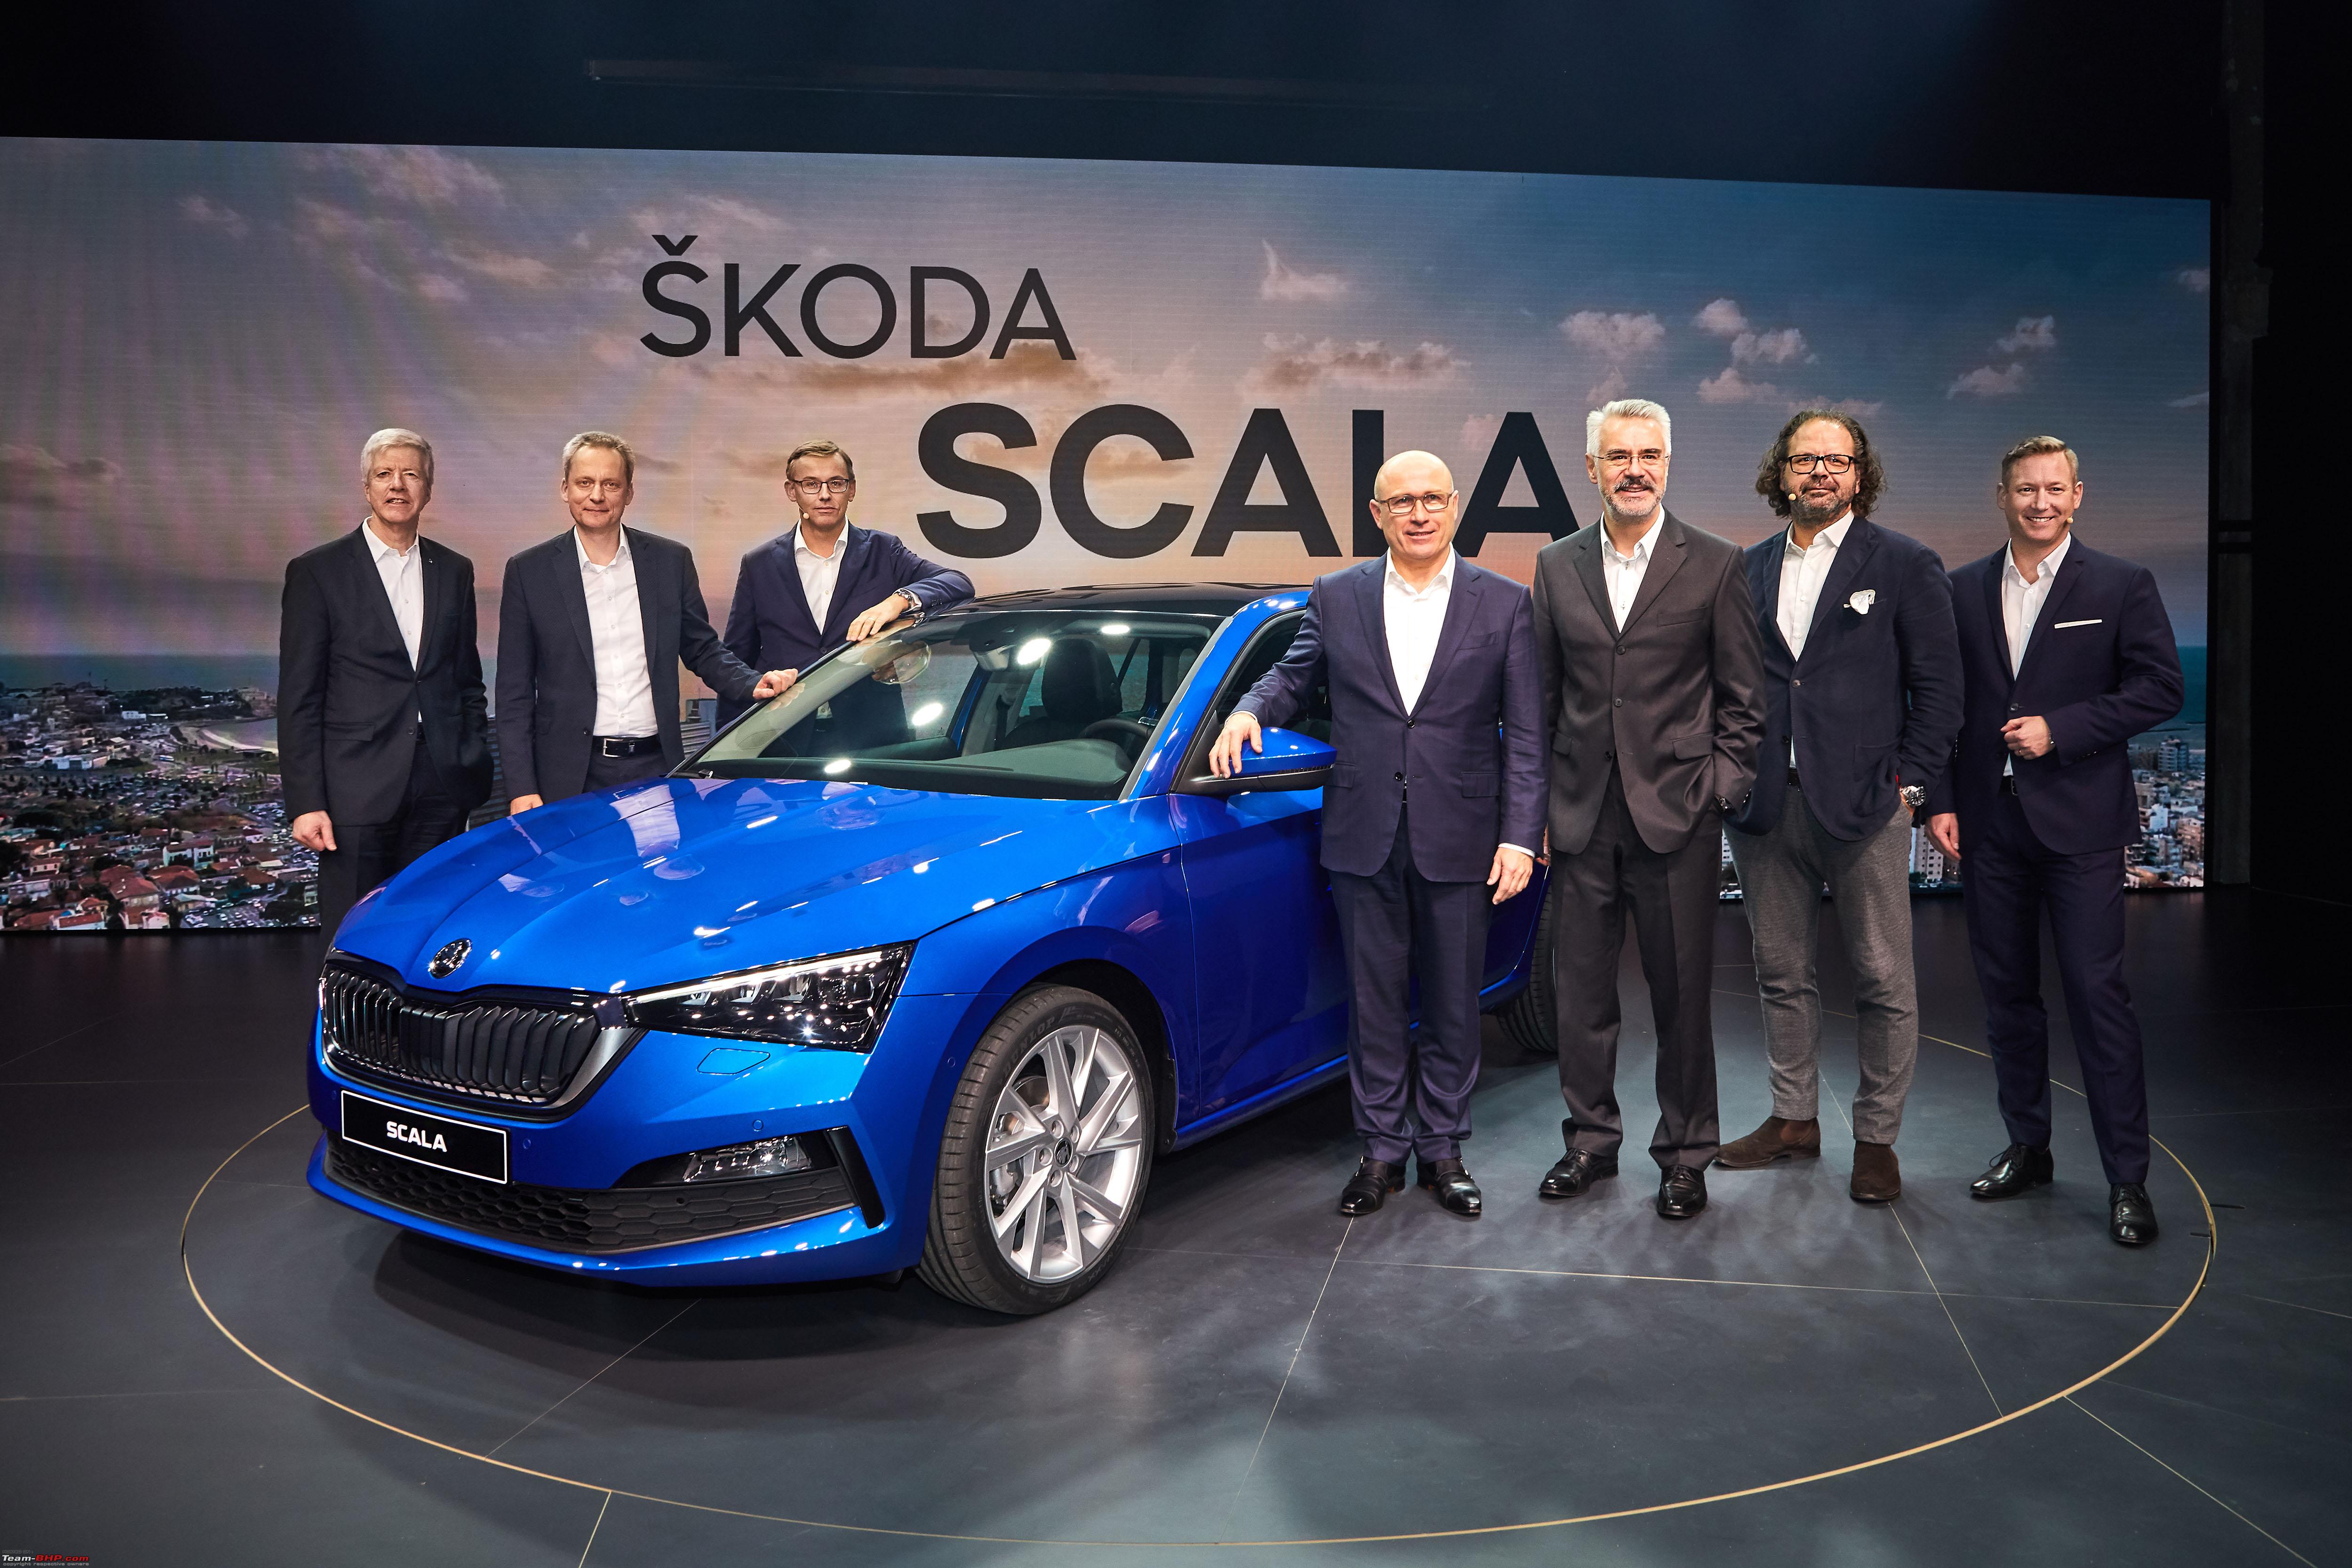 Skoda Scala Hatchback Revealed, India Launch Unclear